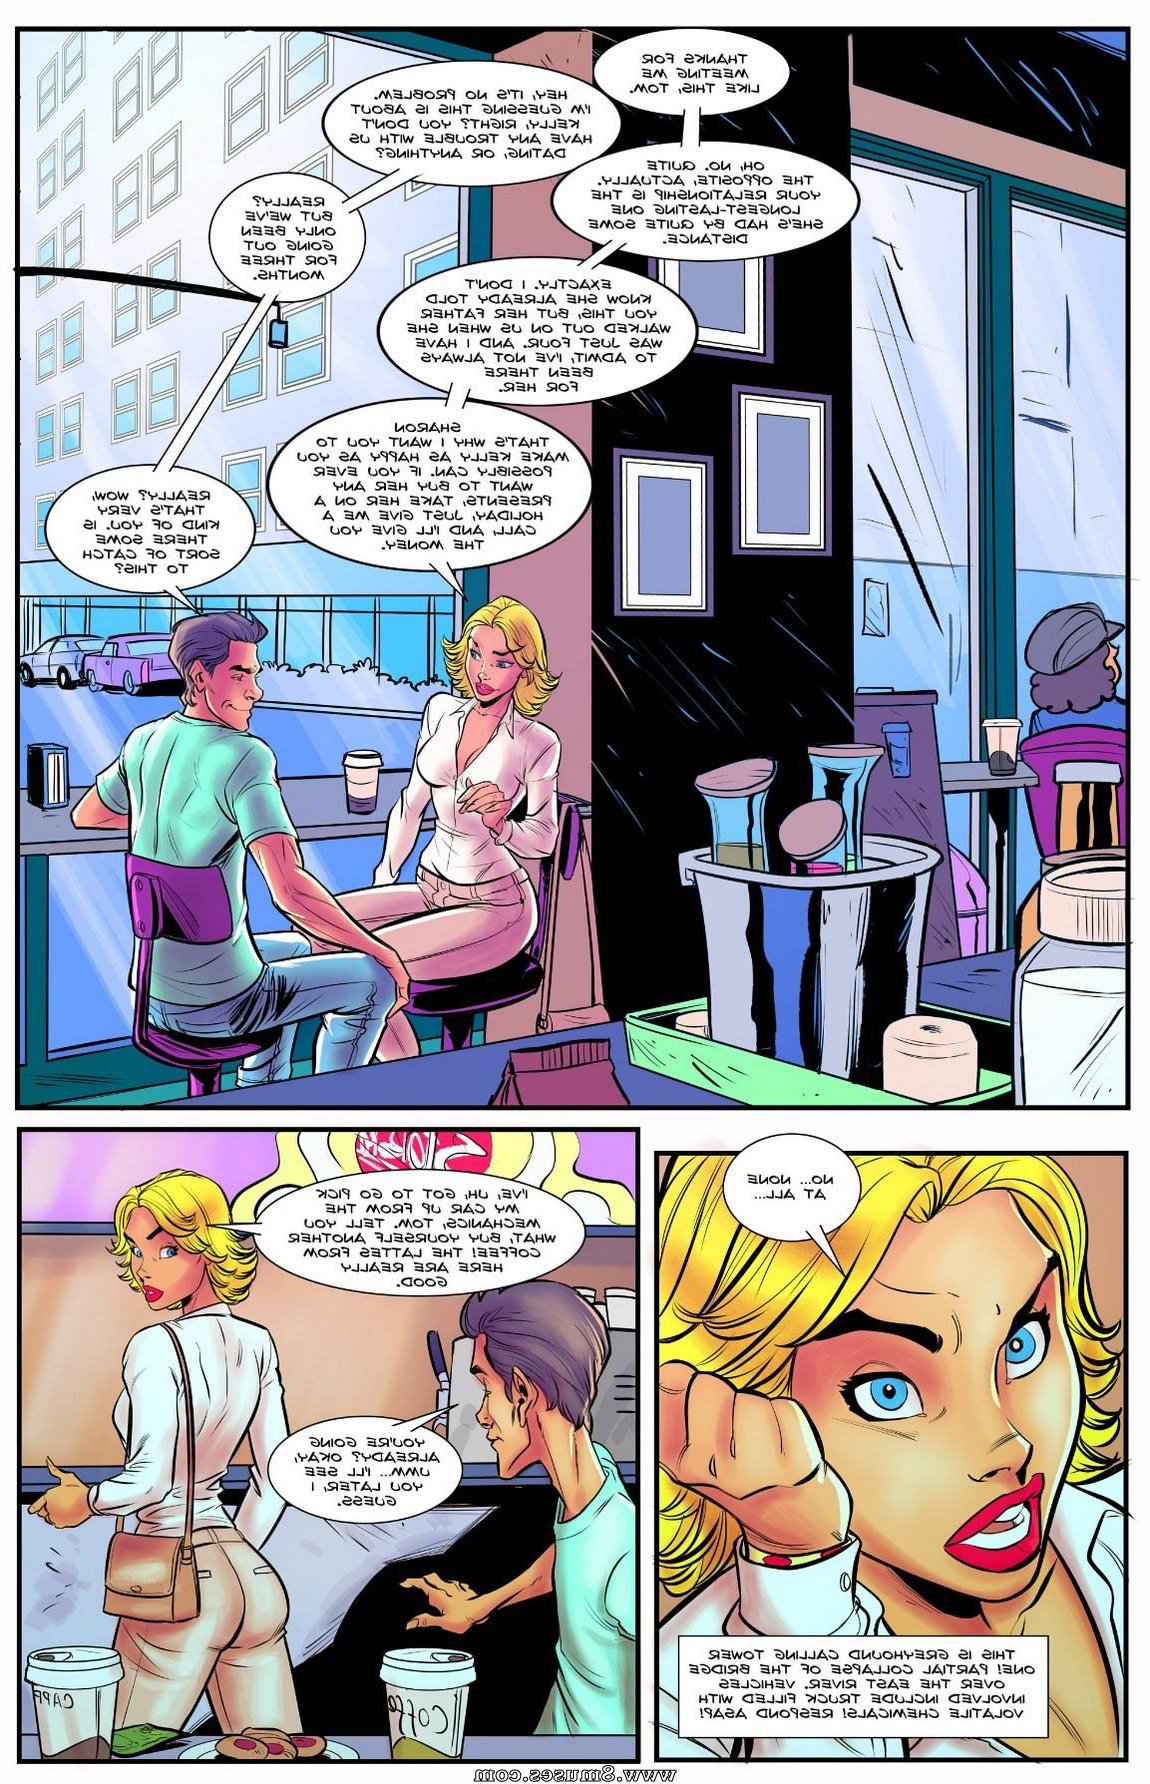 Giantess-Club-Comics/The-Superheroines-Daughter/Issue-2 The_Superheroines_Daughter_-_Issue_2_3.jpg